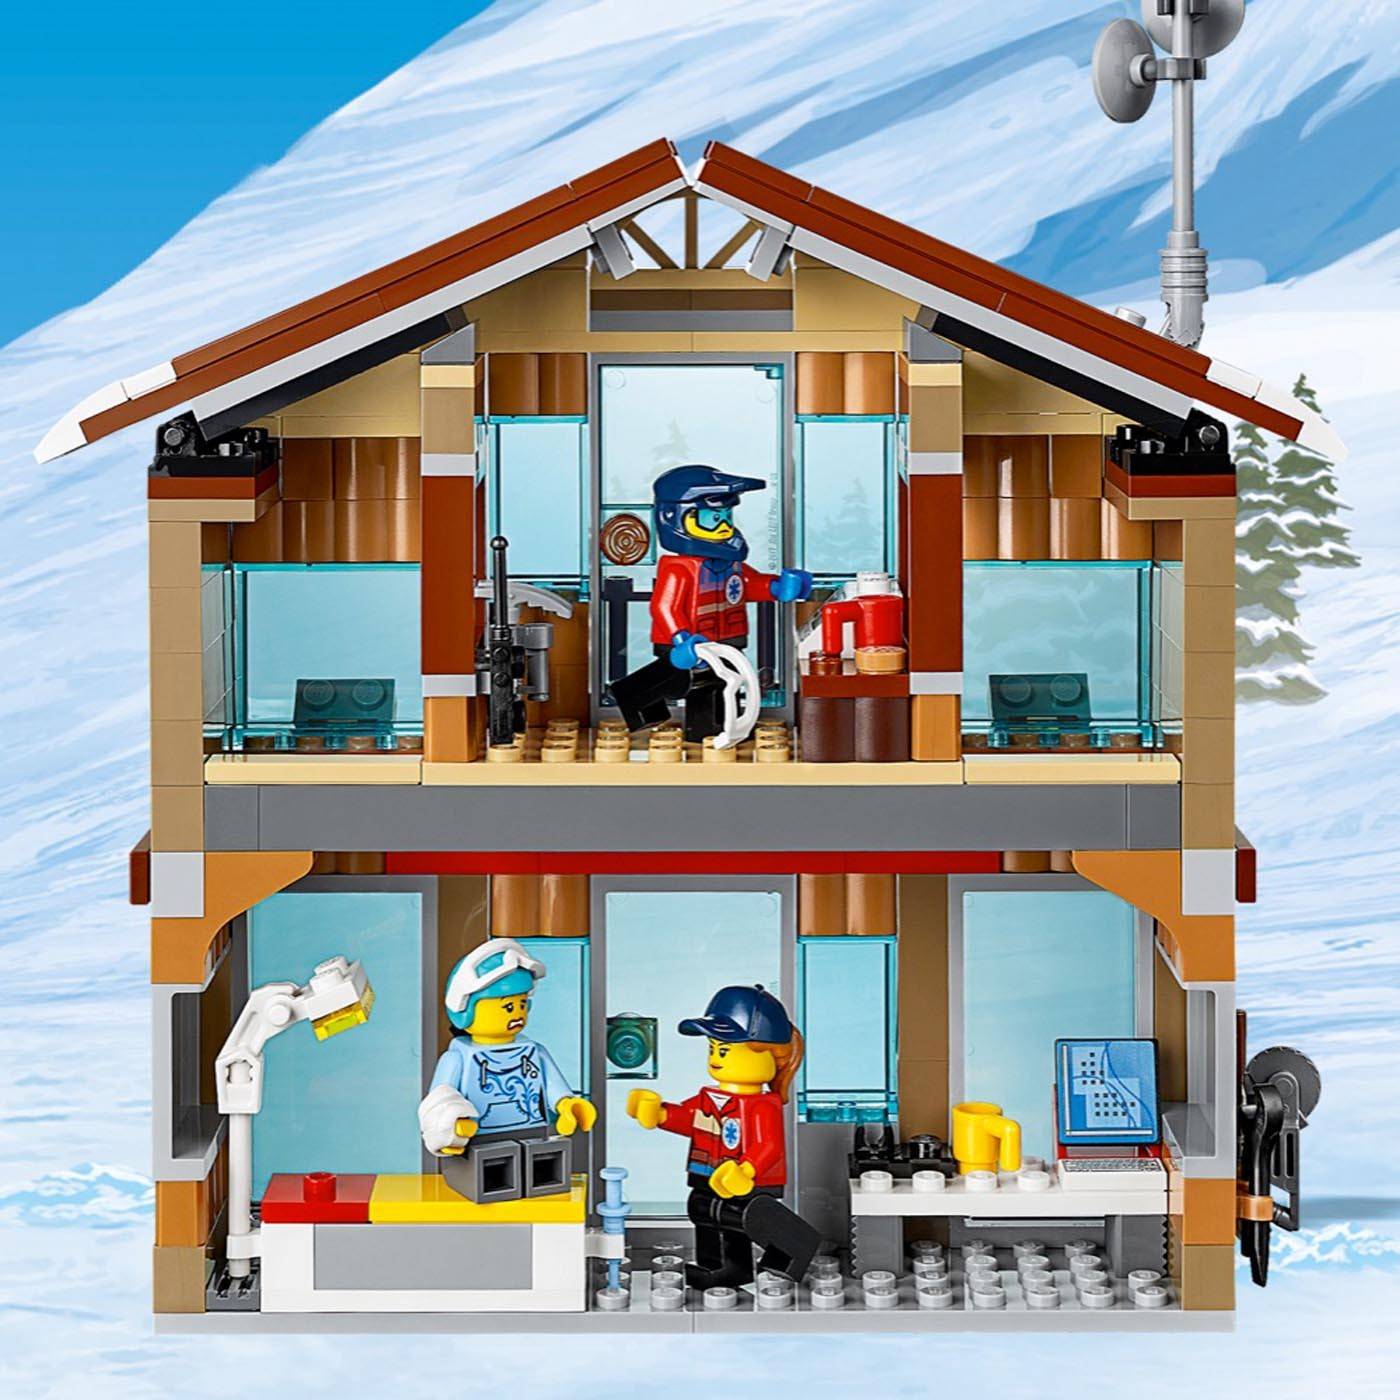 LEGO City Otwarcie sklepu z pączkami 60233